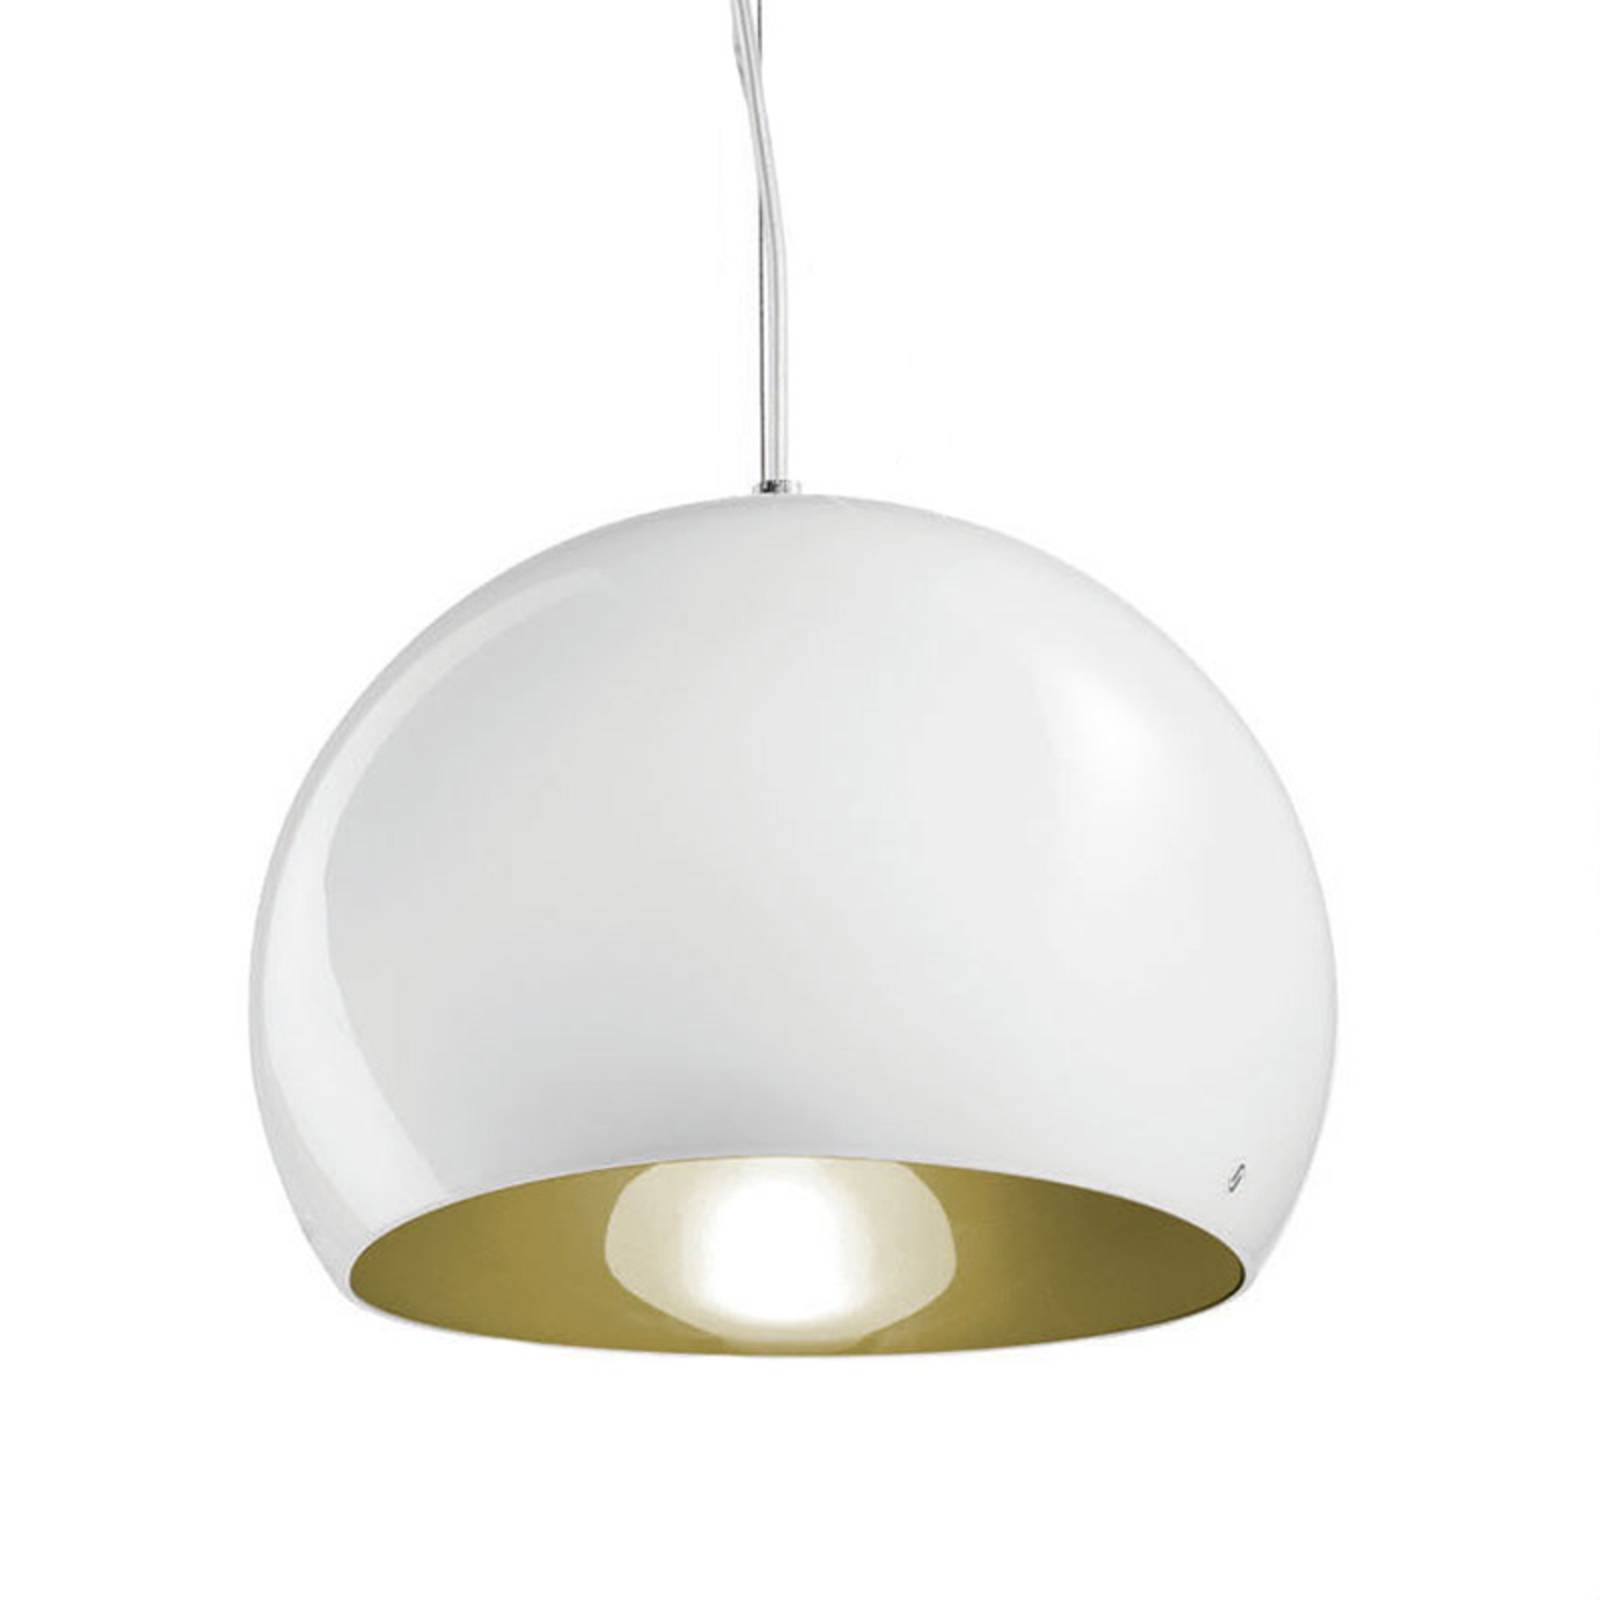 Hanglamp Surface Ø 27 cm, E27 wit/oud groen